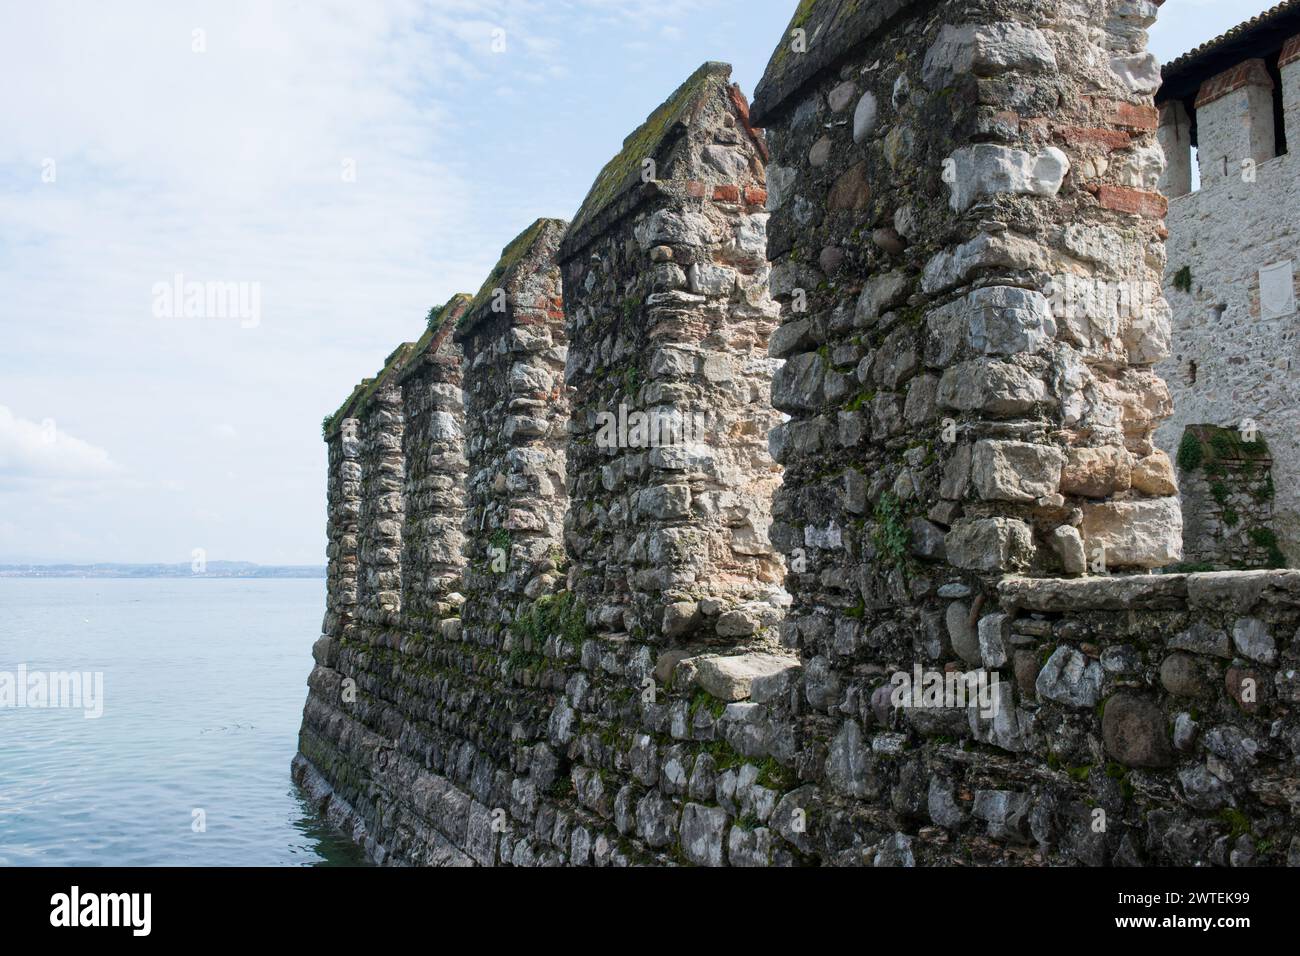 Primo piano della fortezza medievale in pietra a Sirmione, Lago di Garda, Italia Foto Stock